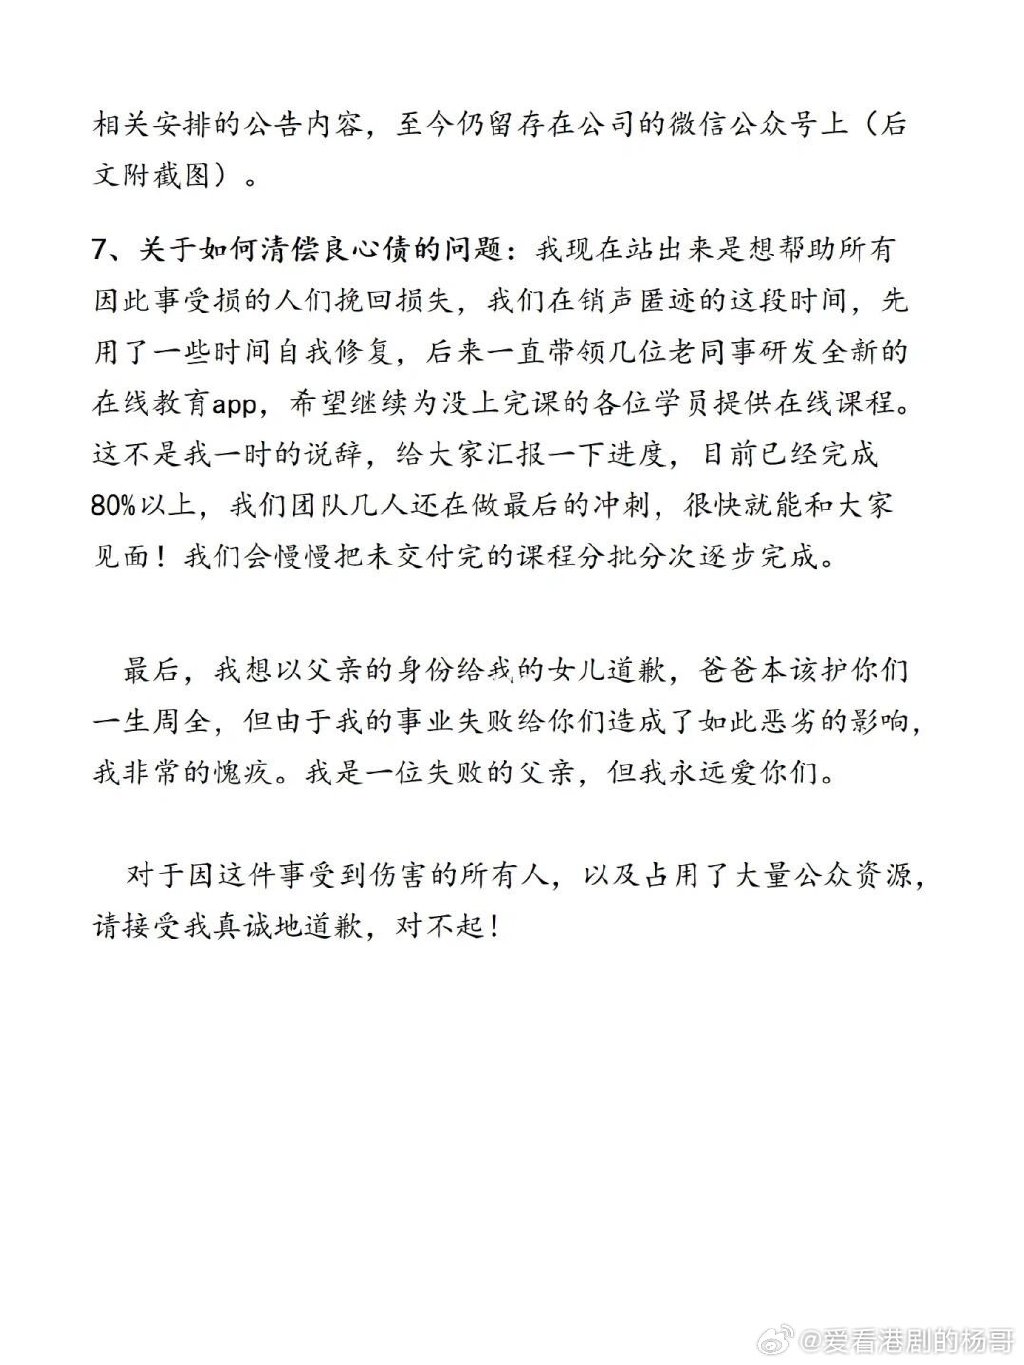 王怡然爸爸王召军就事件首度发声，并公开道歉。